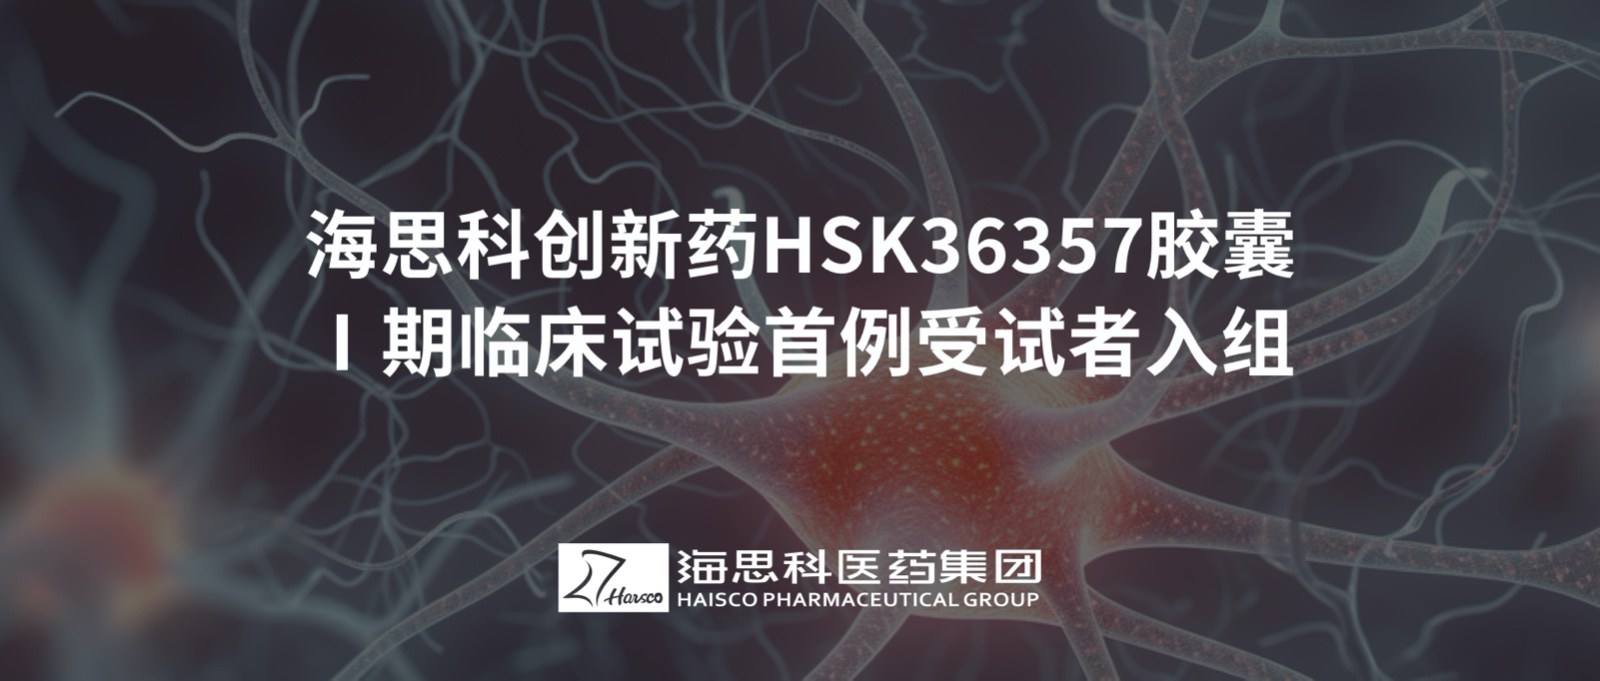 海思科创新药HSK36357胶囊Ⅰ期临床试验首例受试者入组